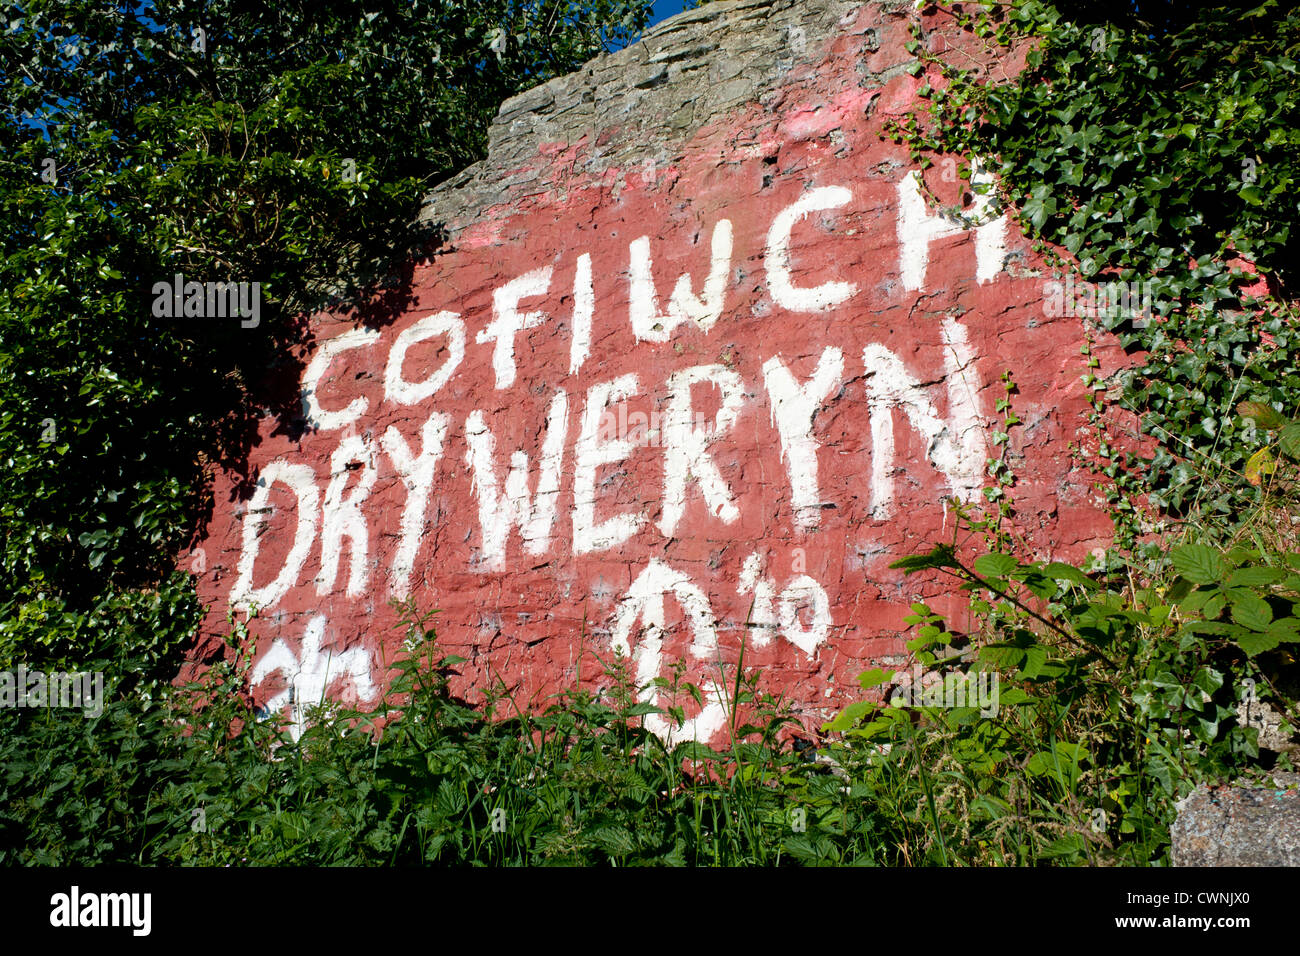 "Cofiwch Dryweryn' 'Recordar Tryweryn' nacionalista Galés pintadas en la pared en la carretera A487 apagado cerca Llanrhystud Ceredigion Gales UK Foto de stock